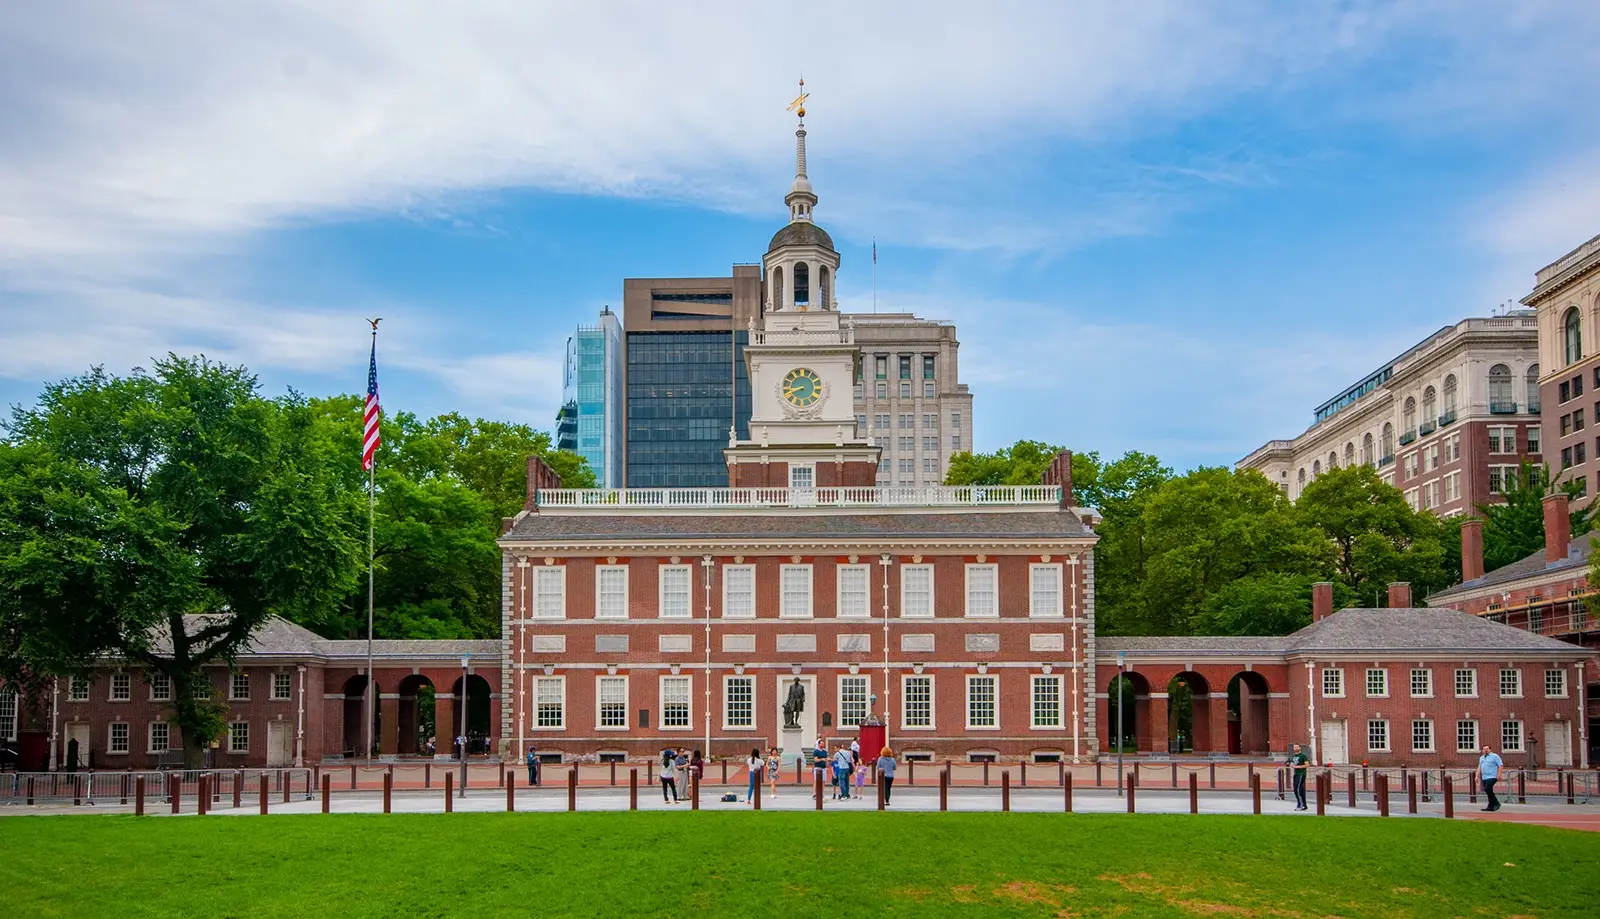 Khám phá Tòa nhà Độc lập Philadelphia - Independence Hall